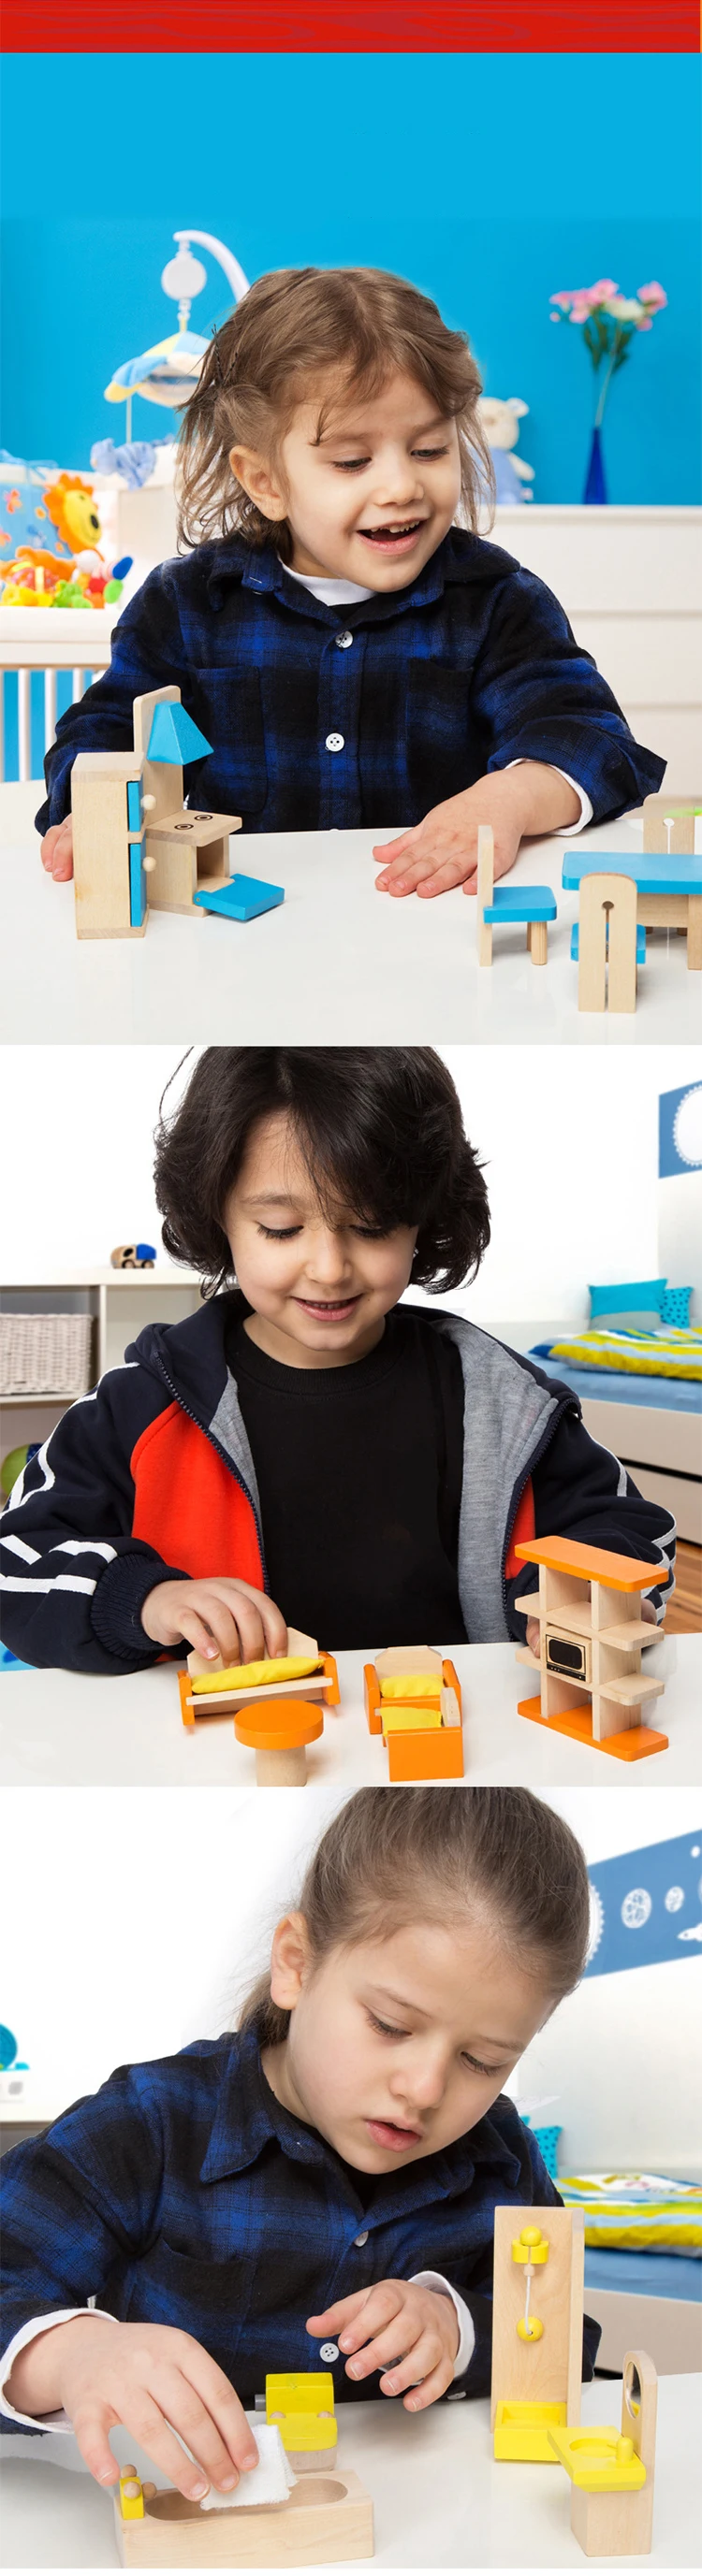 6 стилей ролевые игры дети имитация woodiness игрушечная мебель DIY родитель-ребенок Взаимодействие сцена моделирование детские подарки